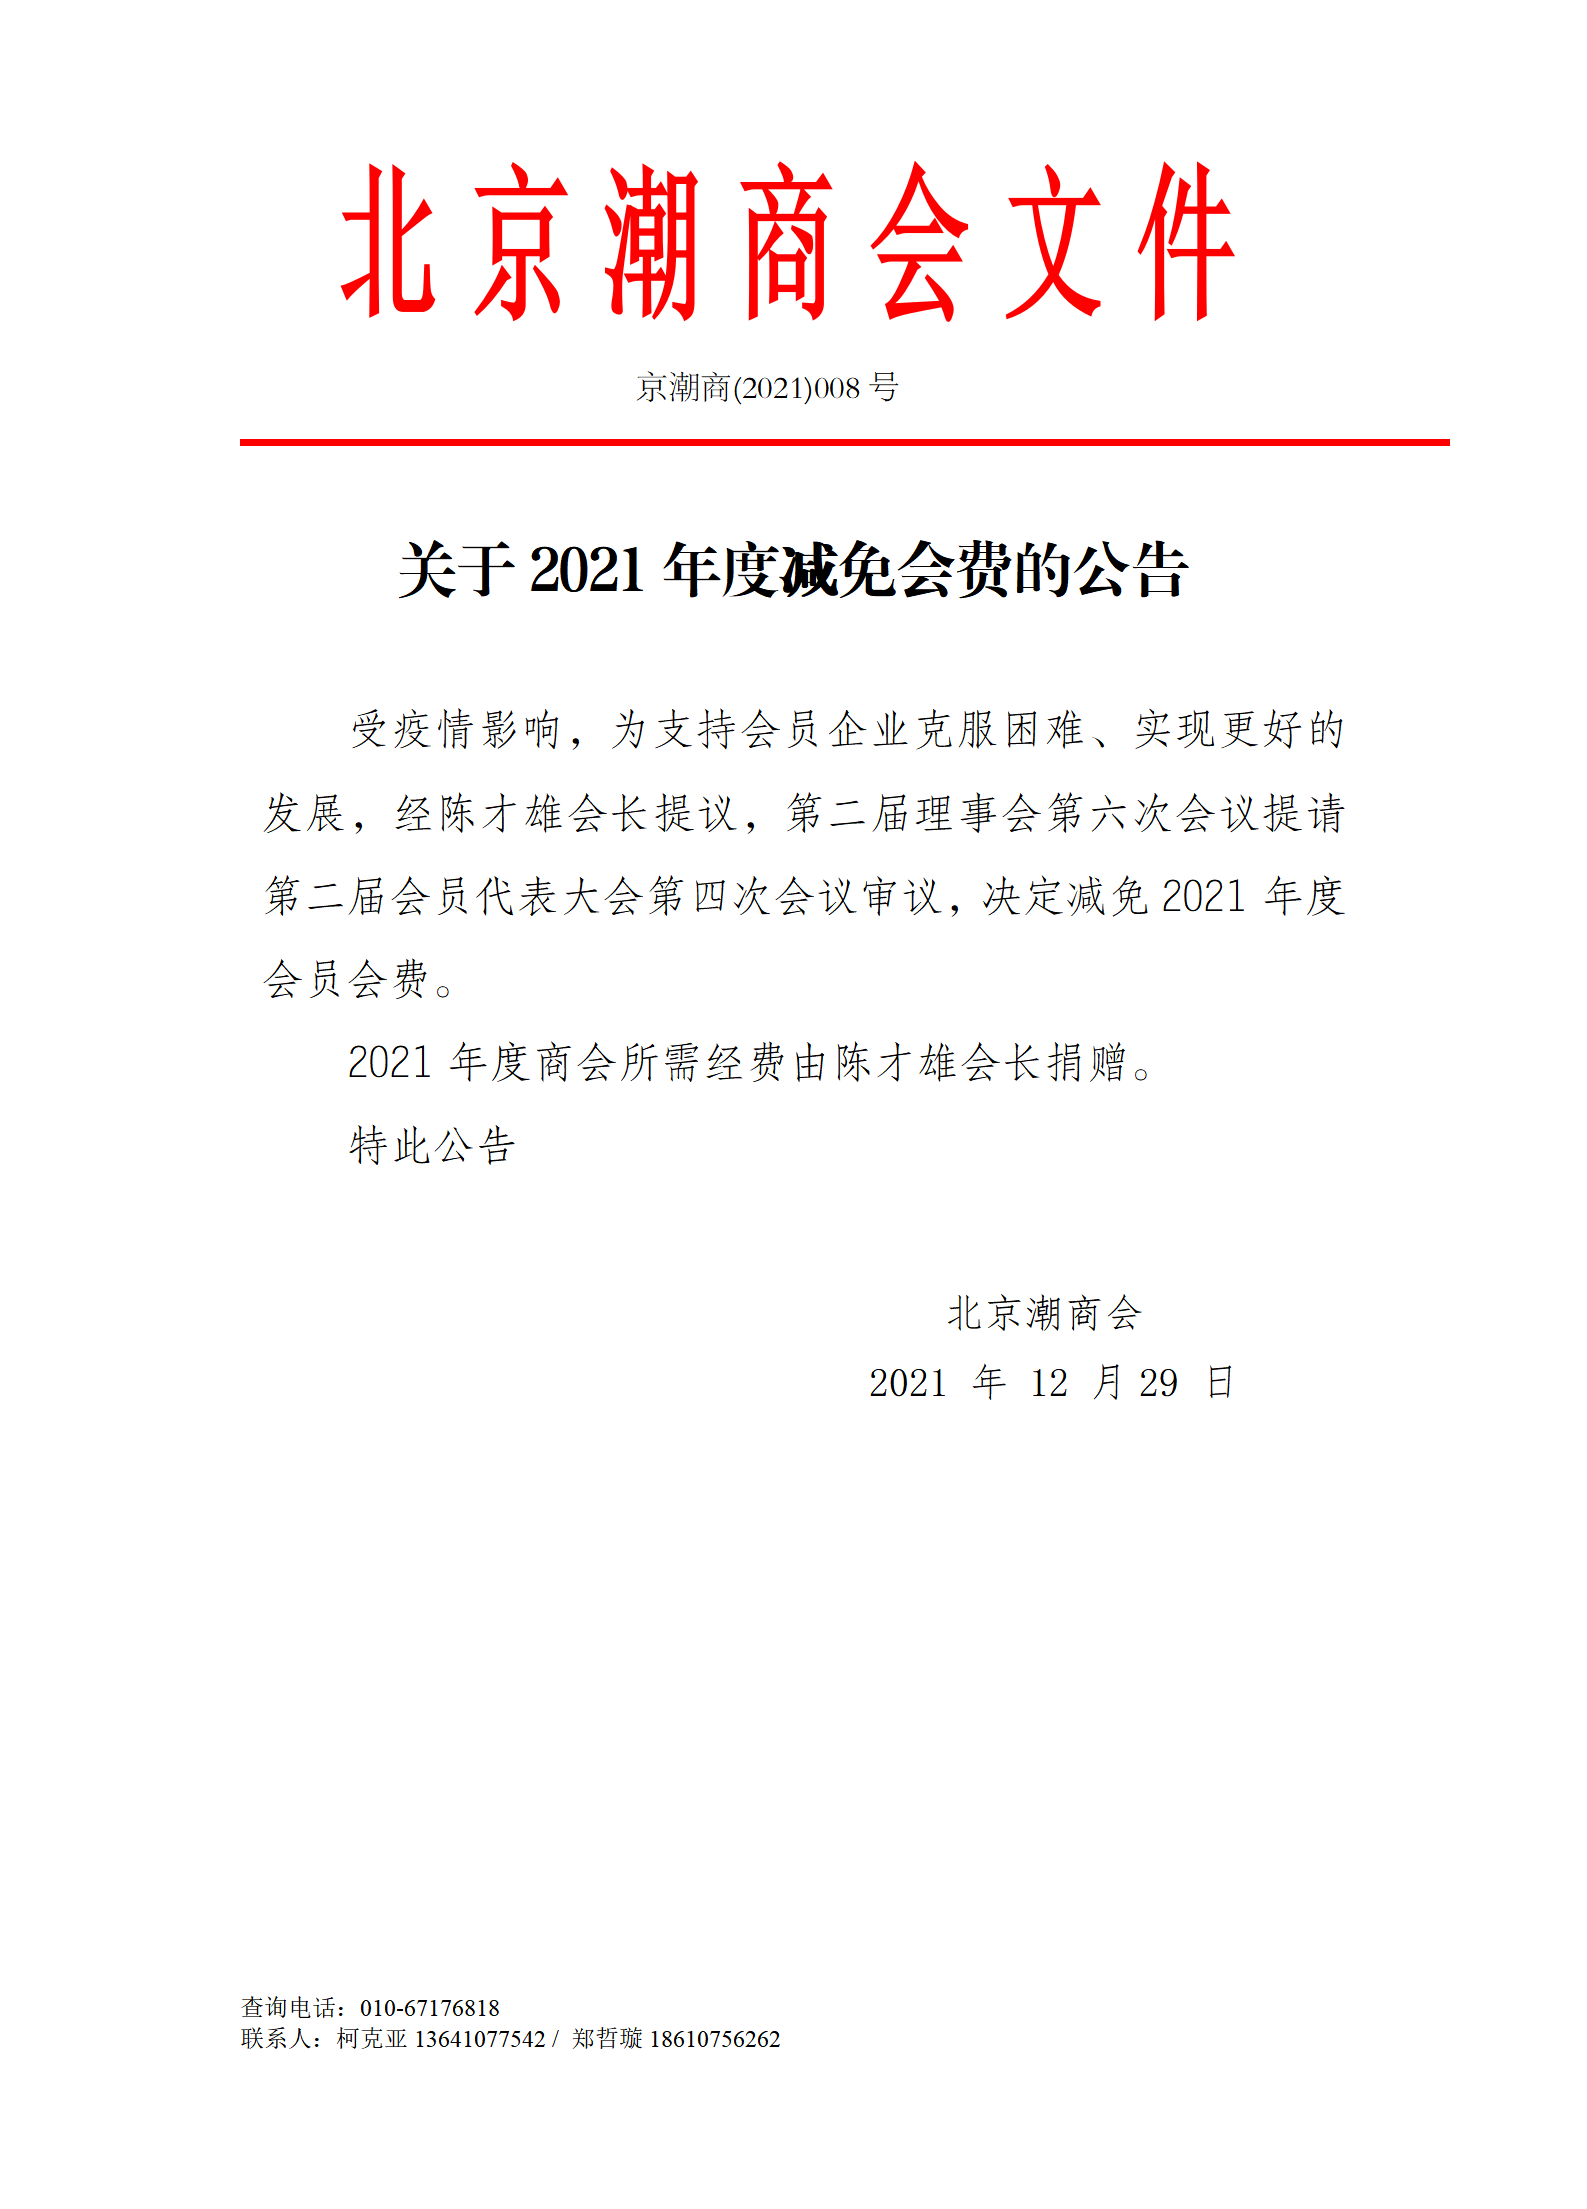 关于北京潮商会2021年度免收会费的公告